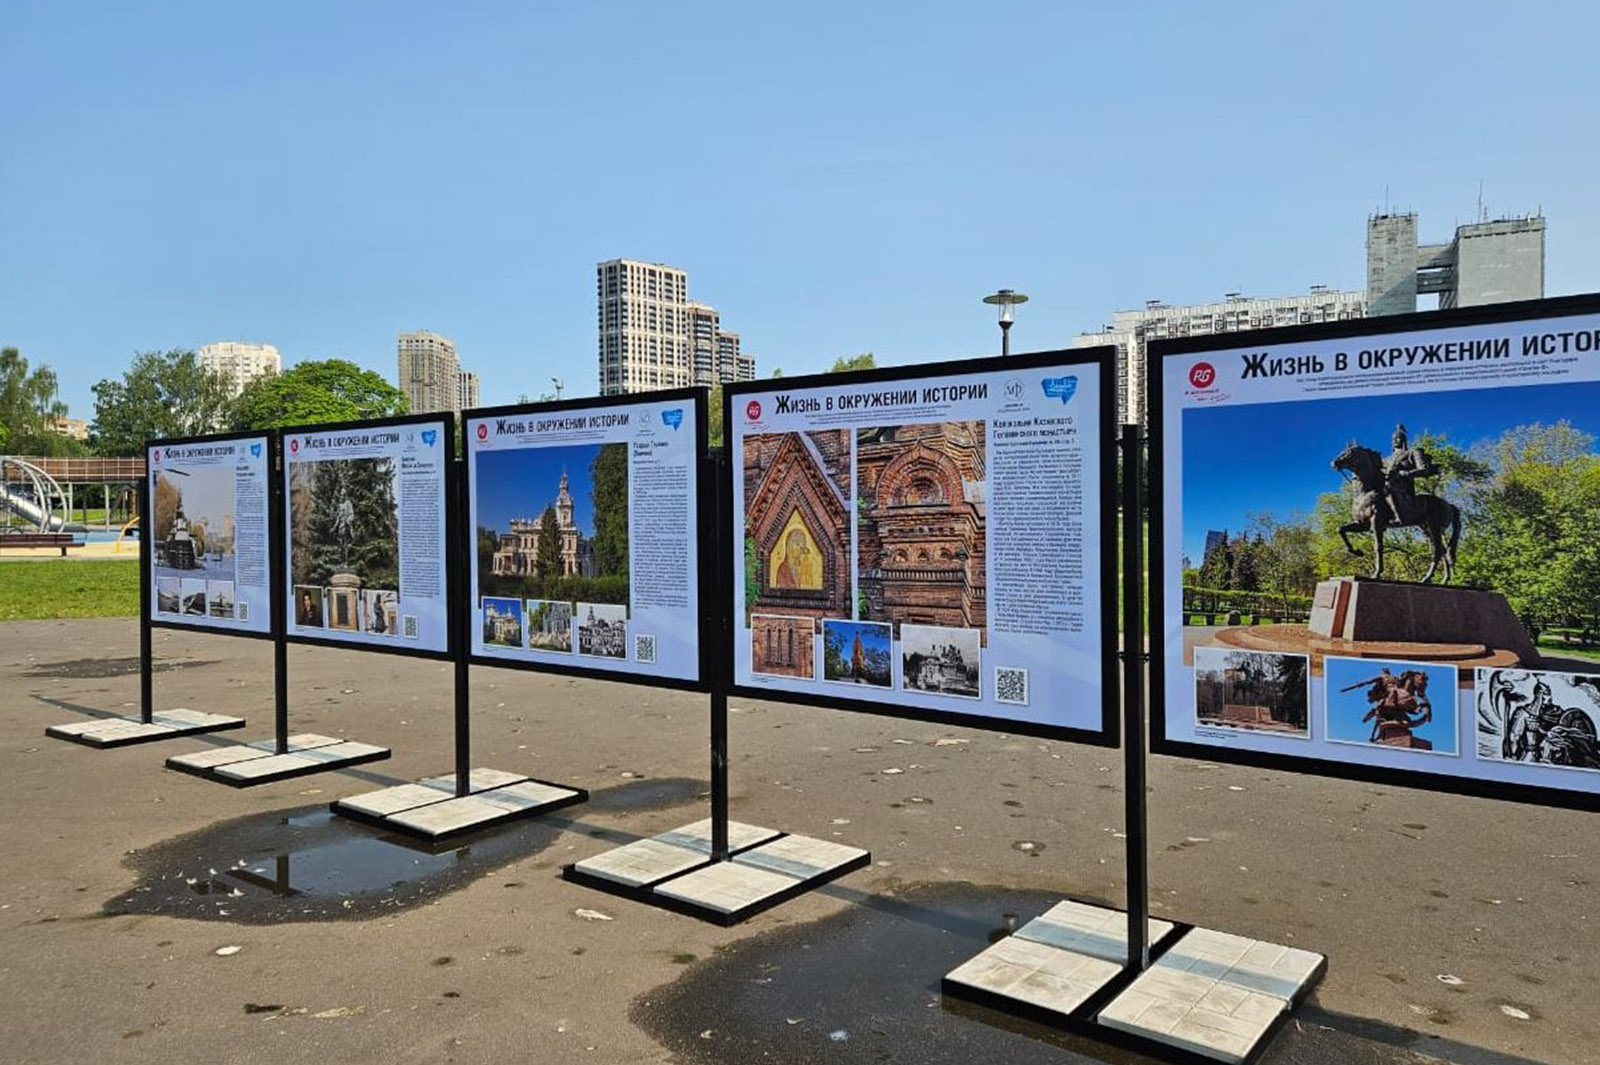 Выставка «Жизнь в окружении истории» открыта в парке «Ходынское поле», фото